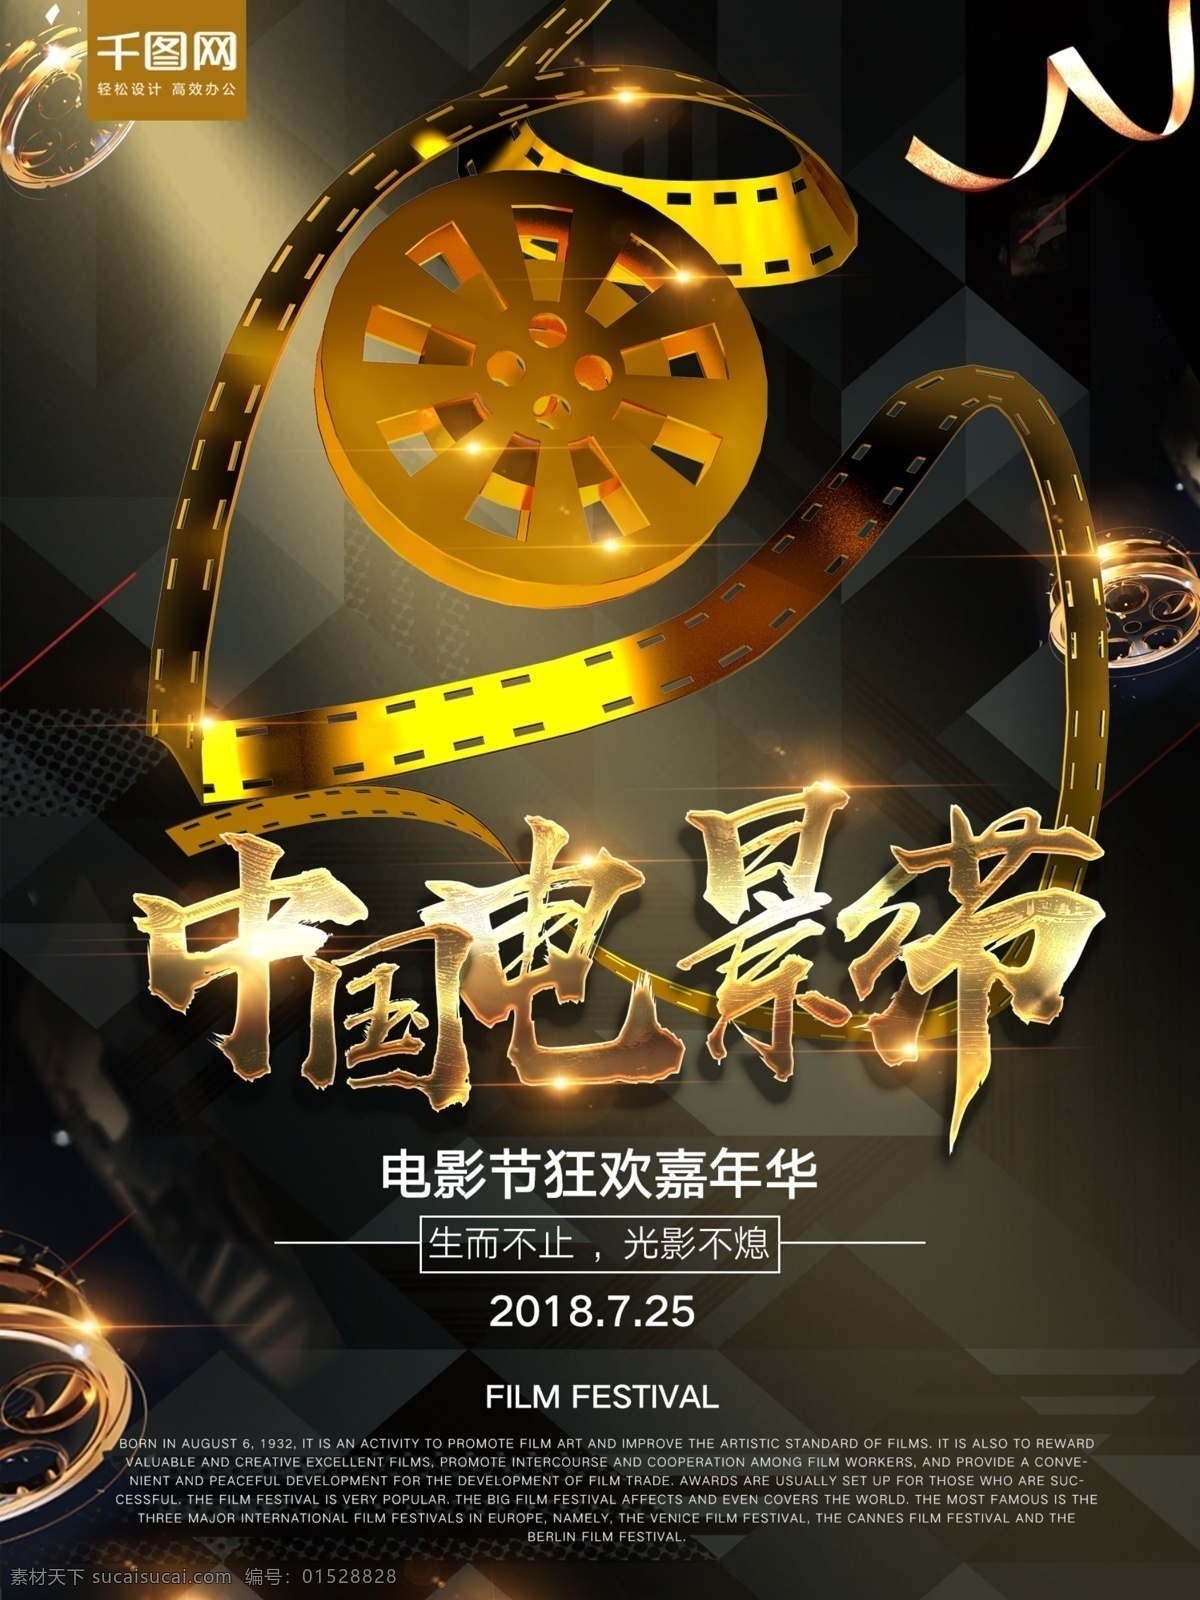 大气 黑金 电影节 宣传海报 交卷 嘉年华 电影 中国电影节 电影节海报